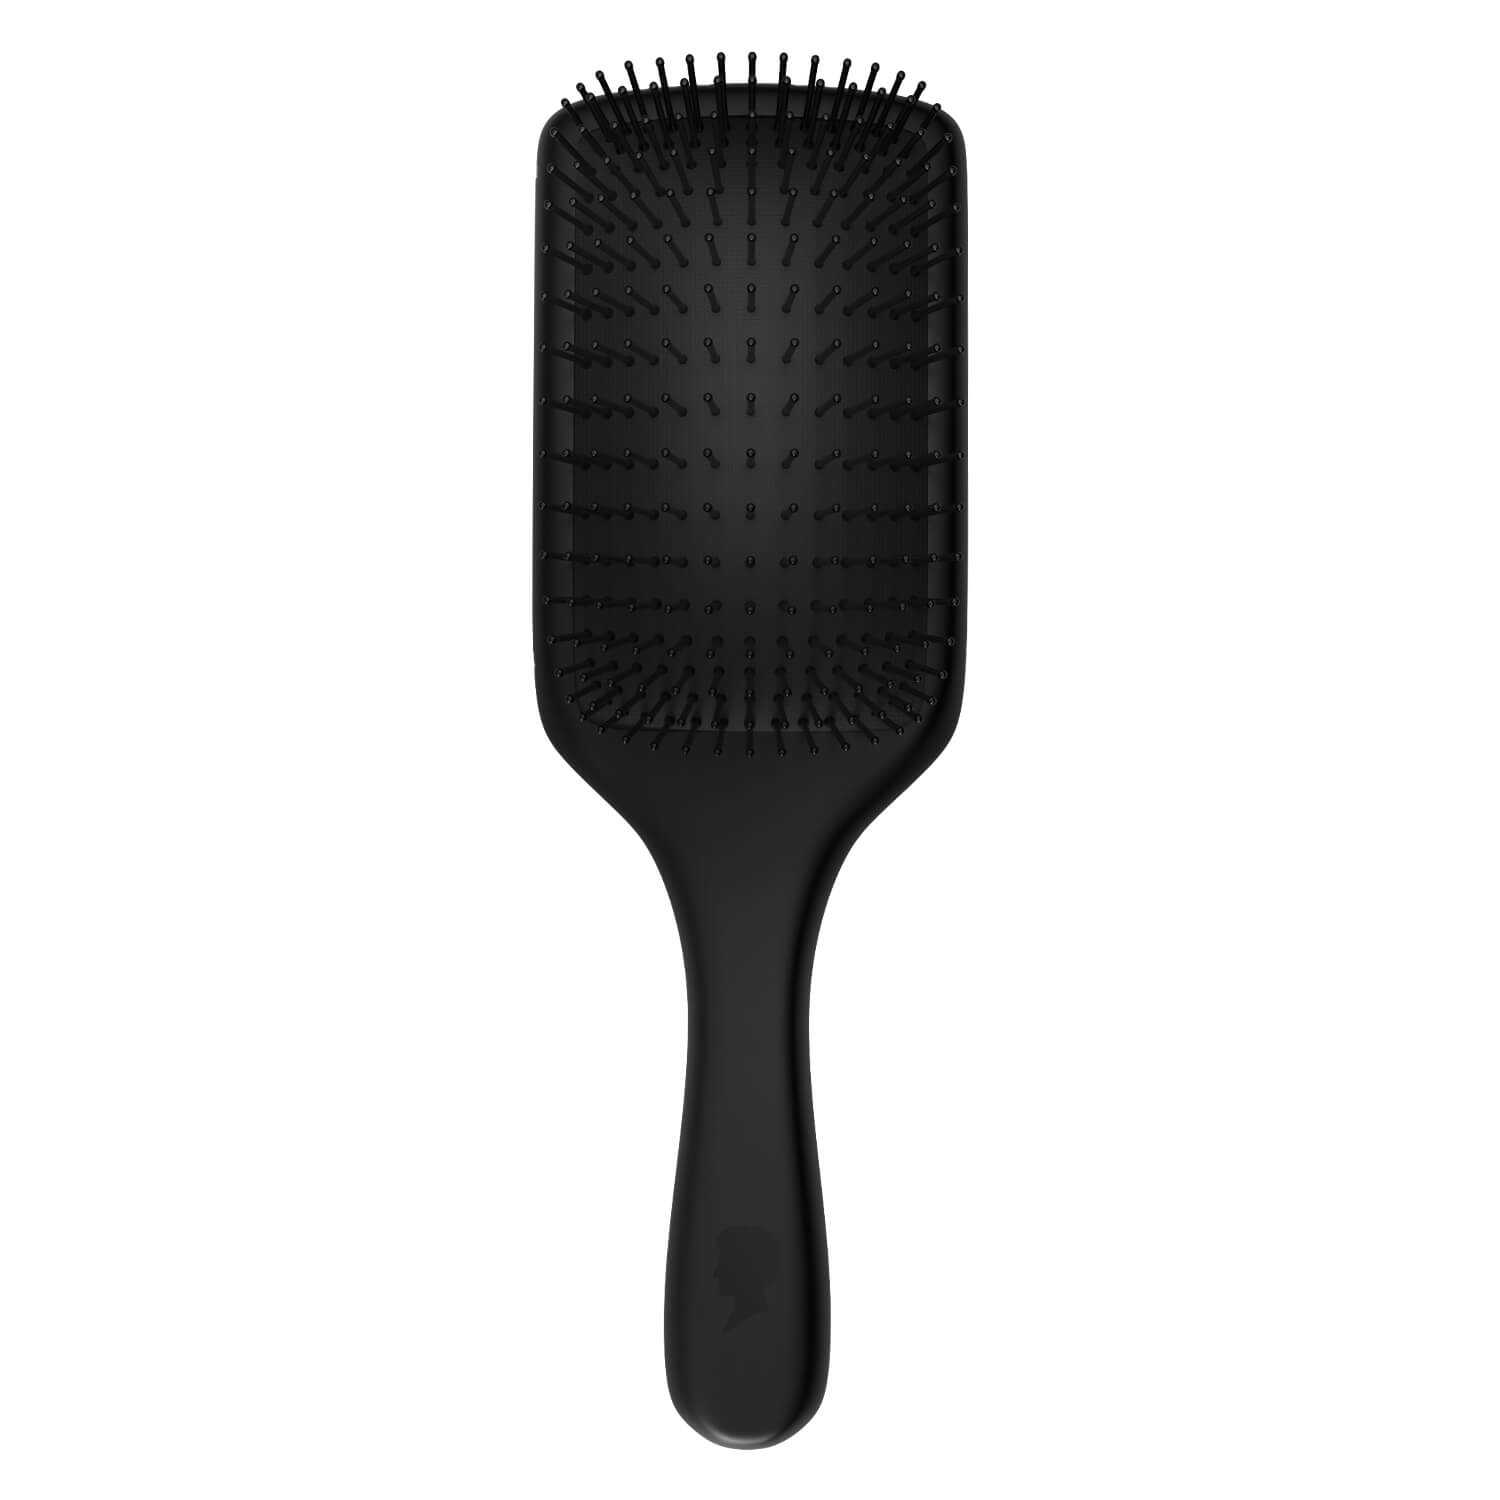 Produktbild von Schwarzkopf Tools - Paddle Brush L